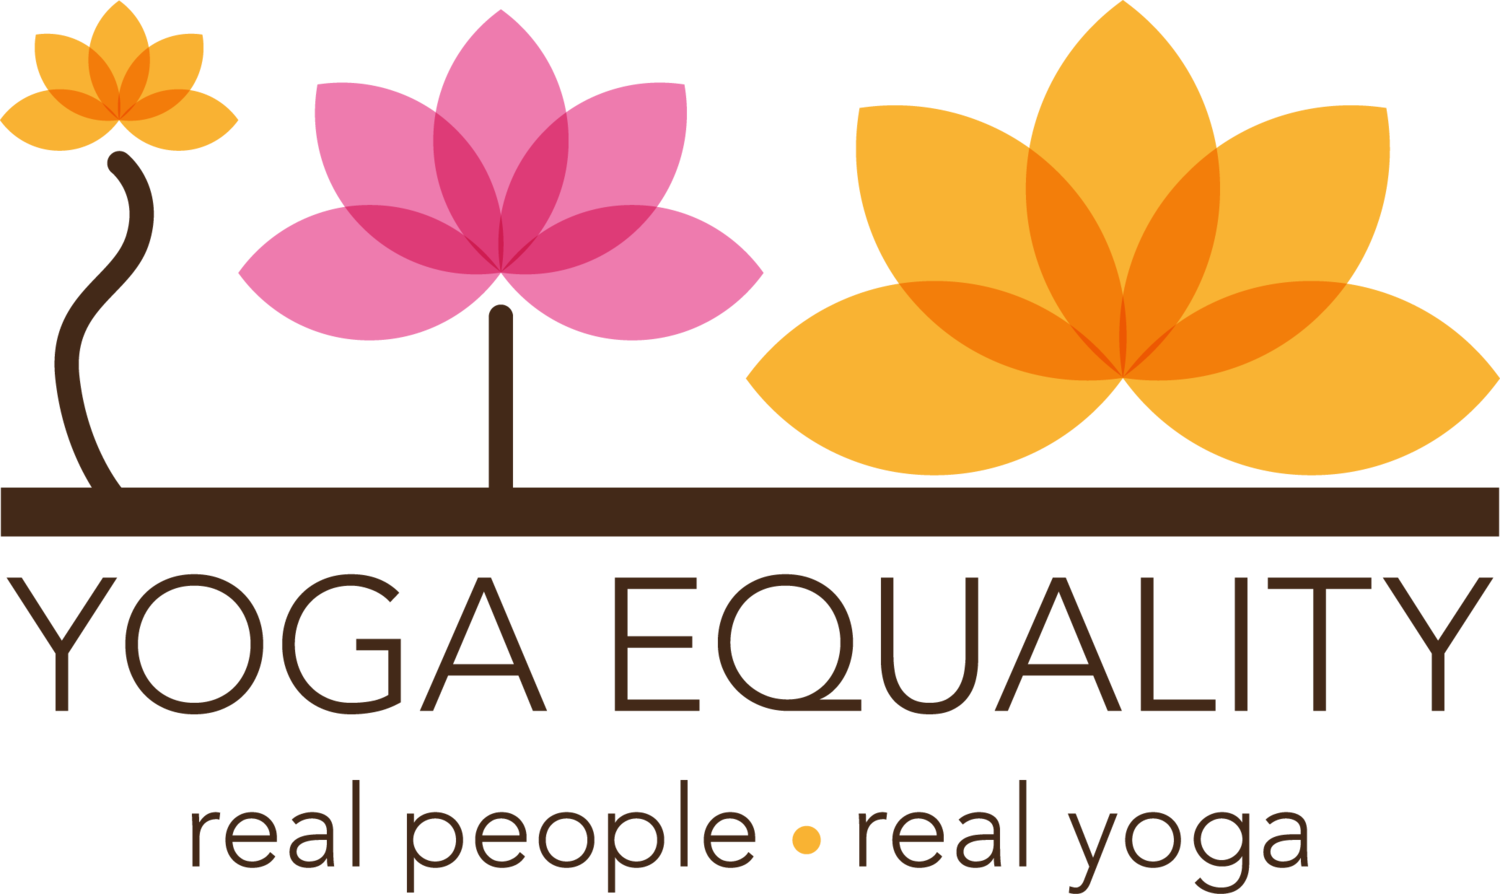 Yoga Equality